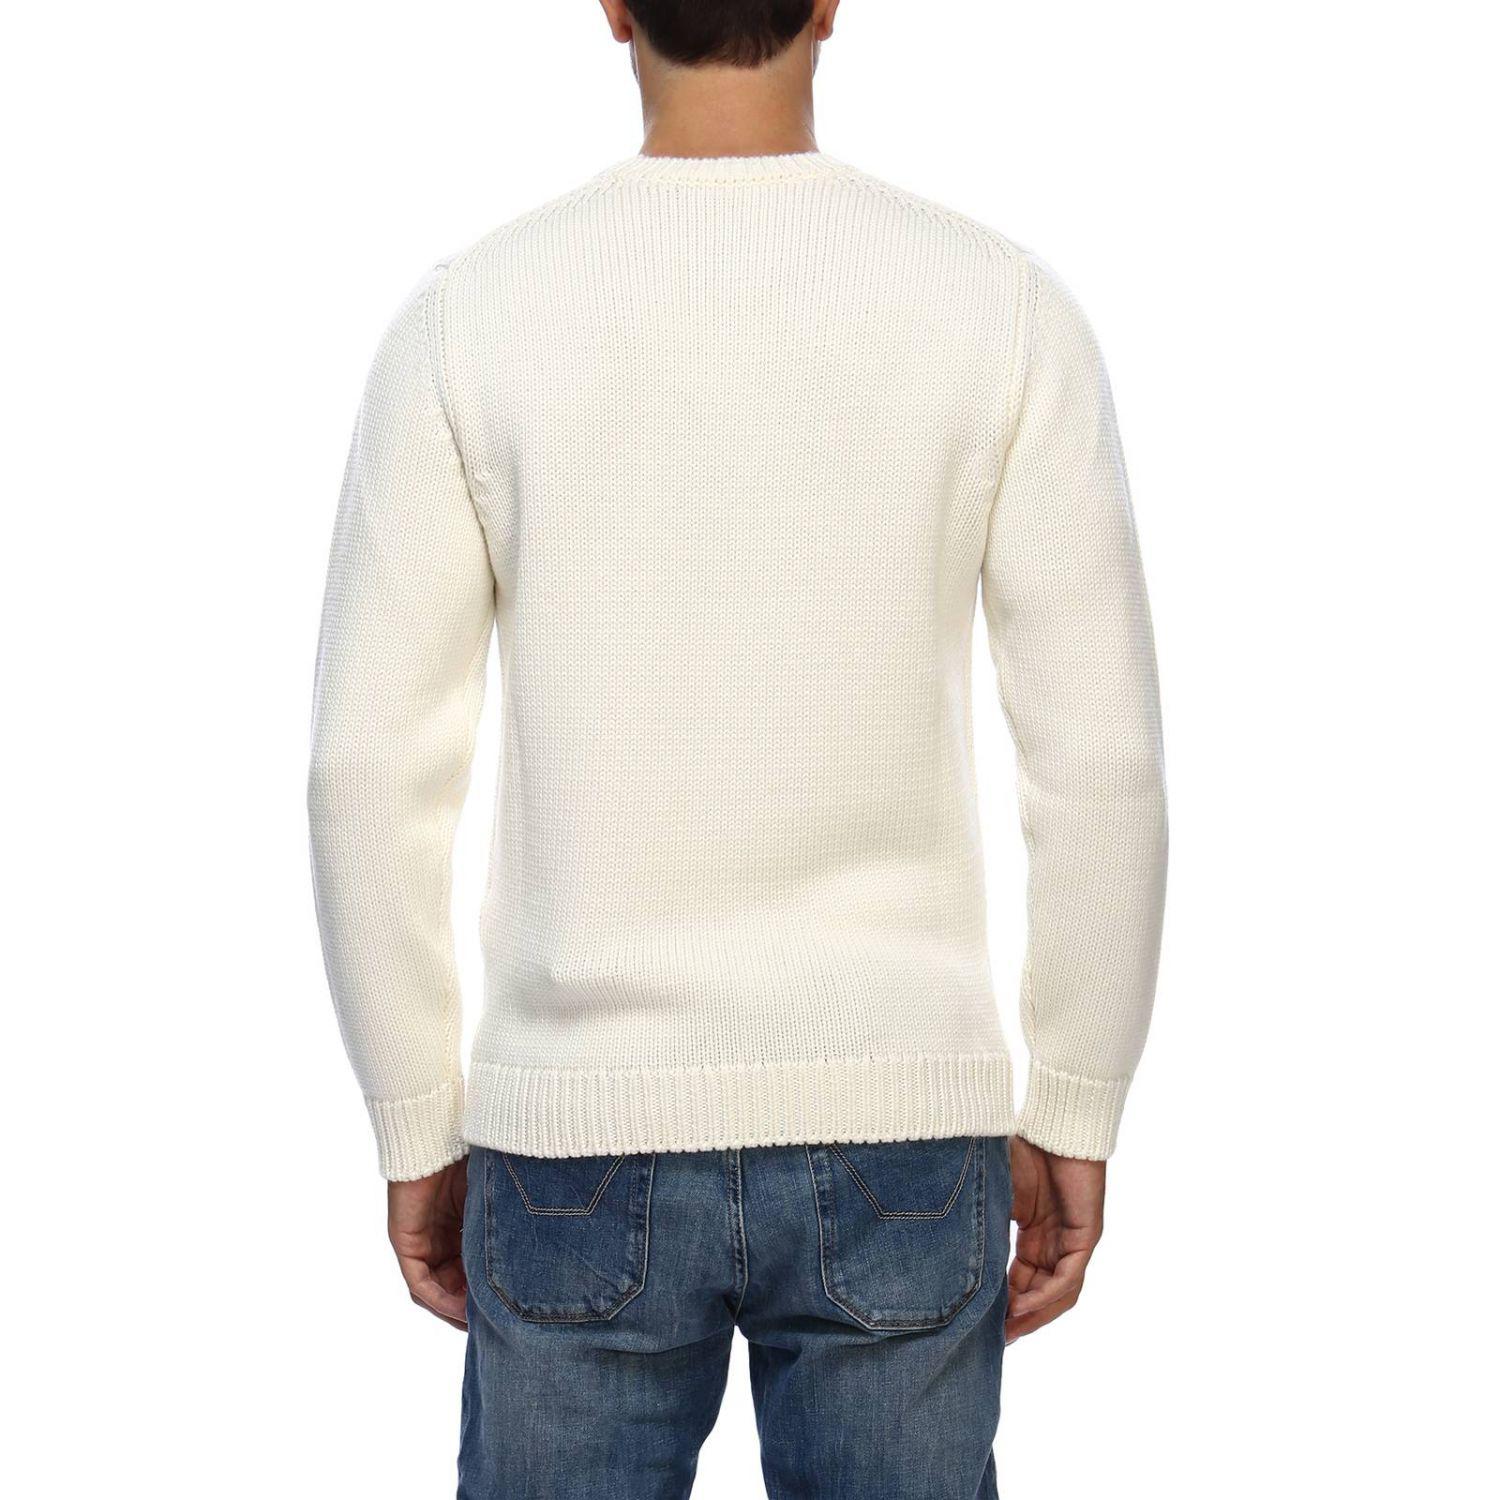 Fendi Sweater Men in White for Men - Lyst